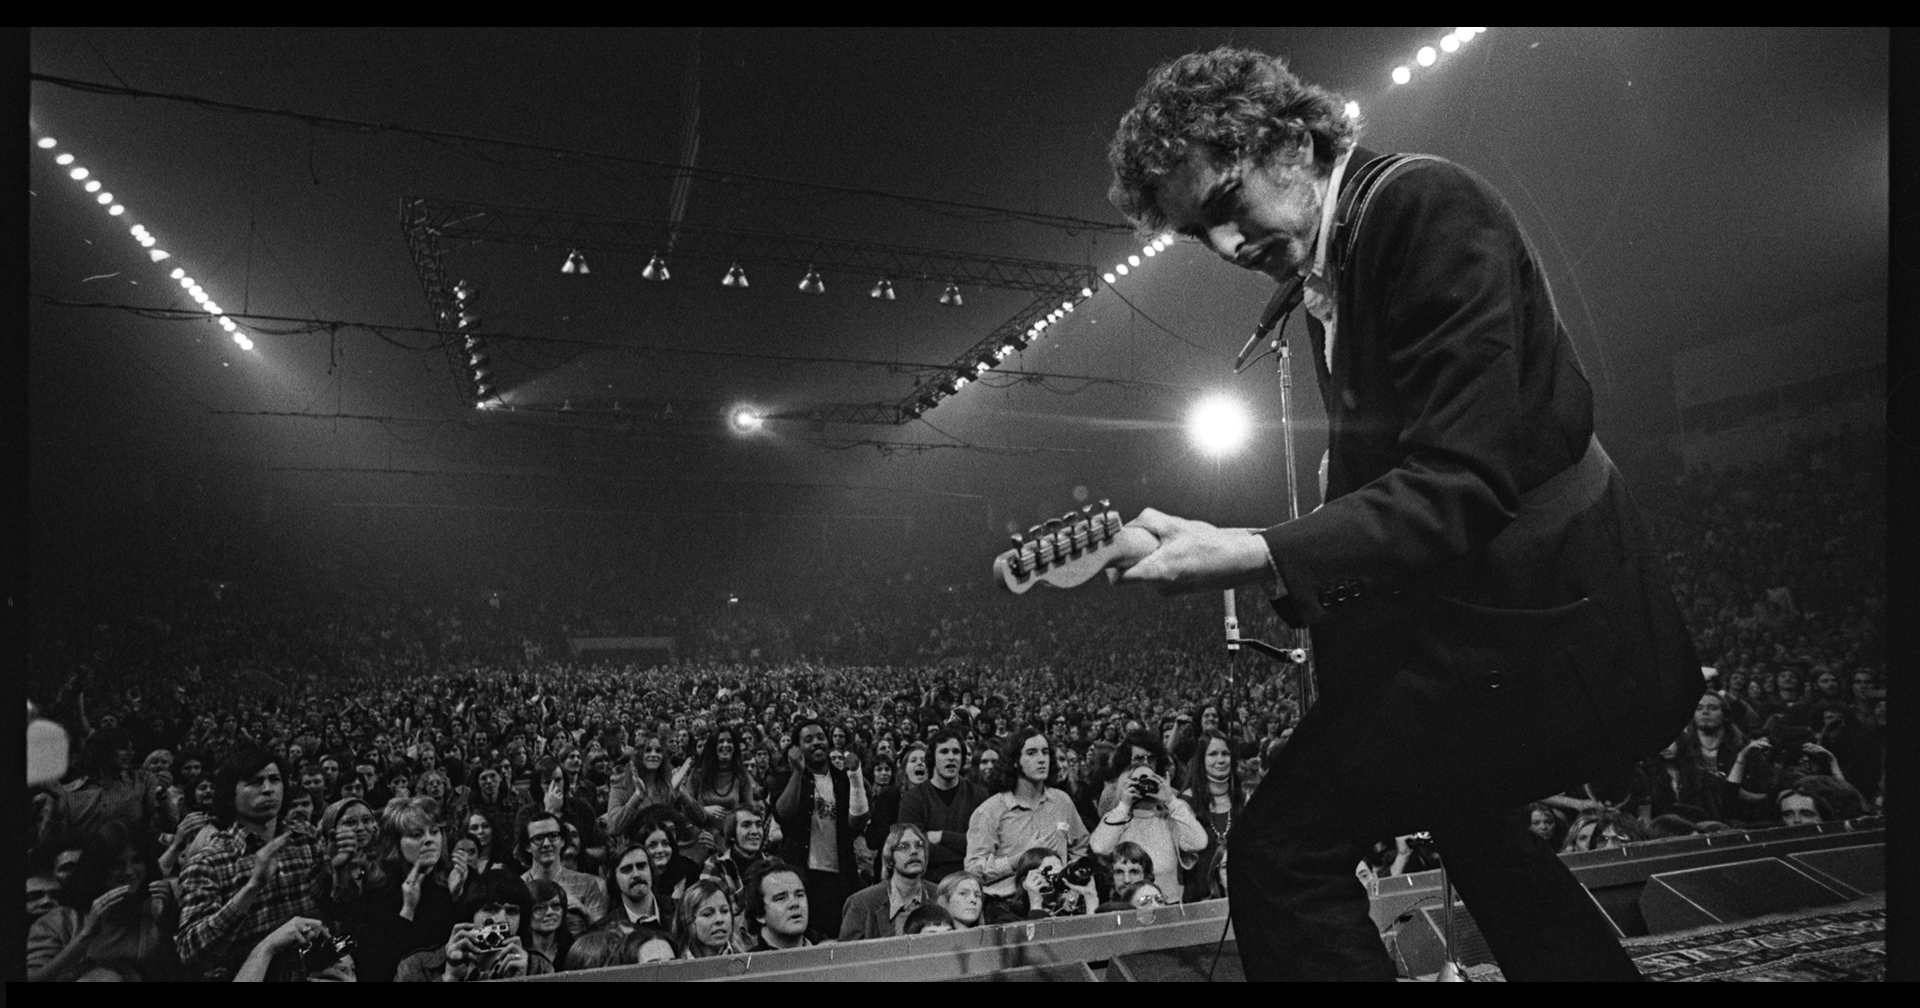 พิพิธภัณฑ์ ‘Bob Dylan’ พร้อมเปิดตัวปีหน้า จัดแสดงคอลเล็กชันของหายากนับแสนชิ้น!